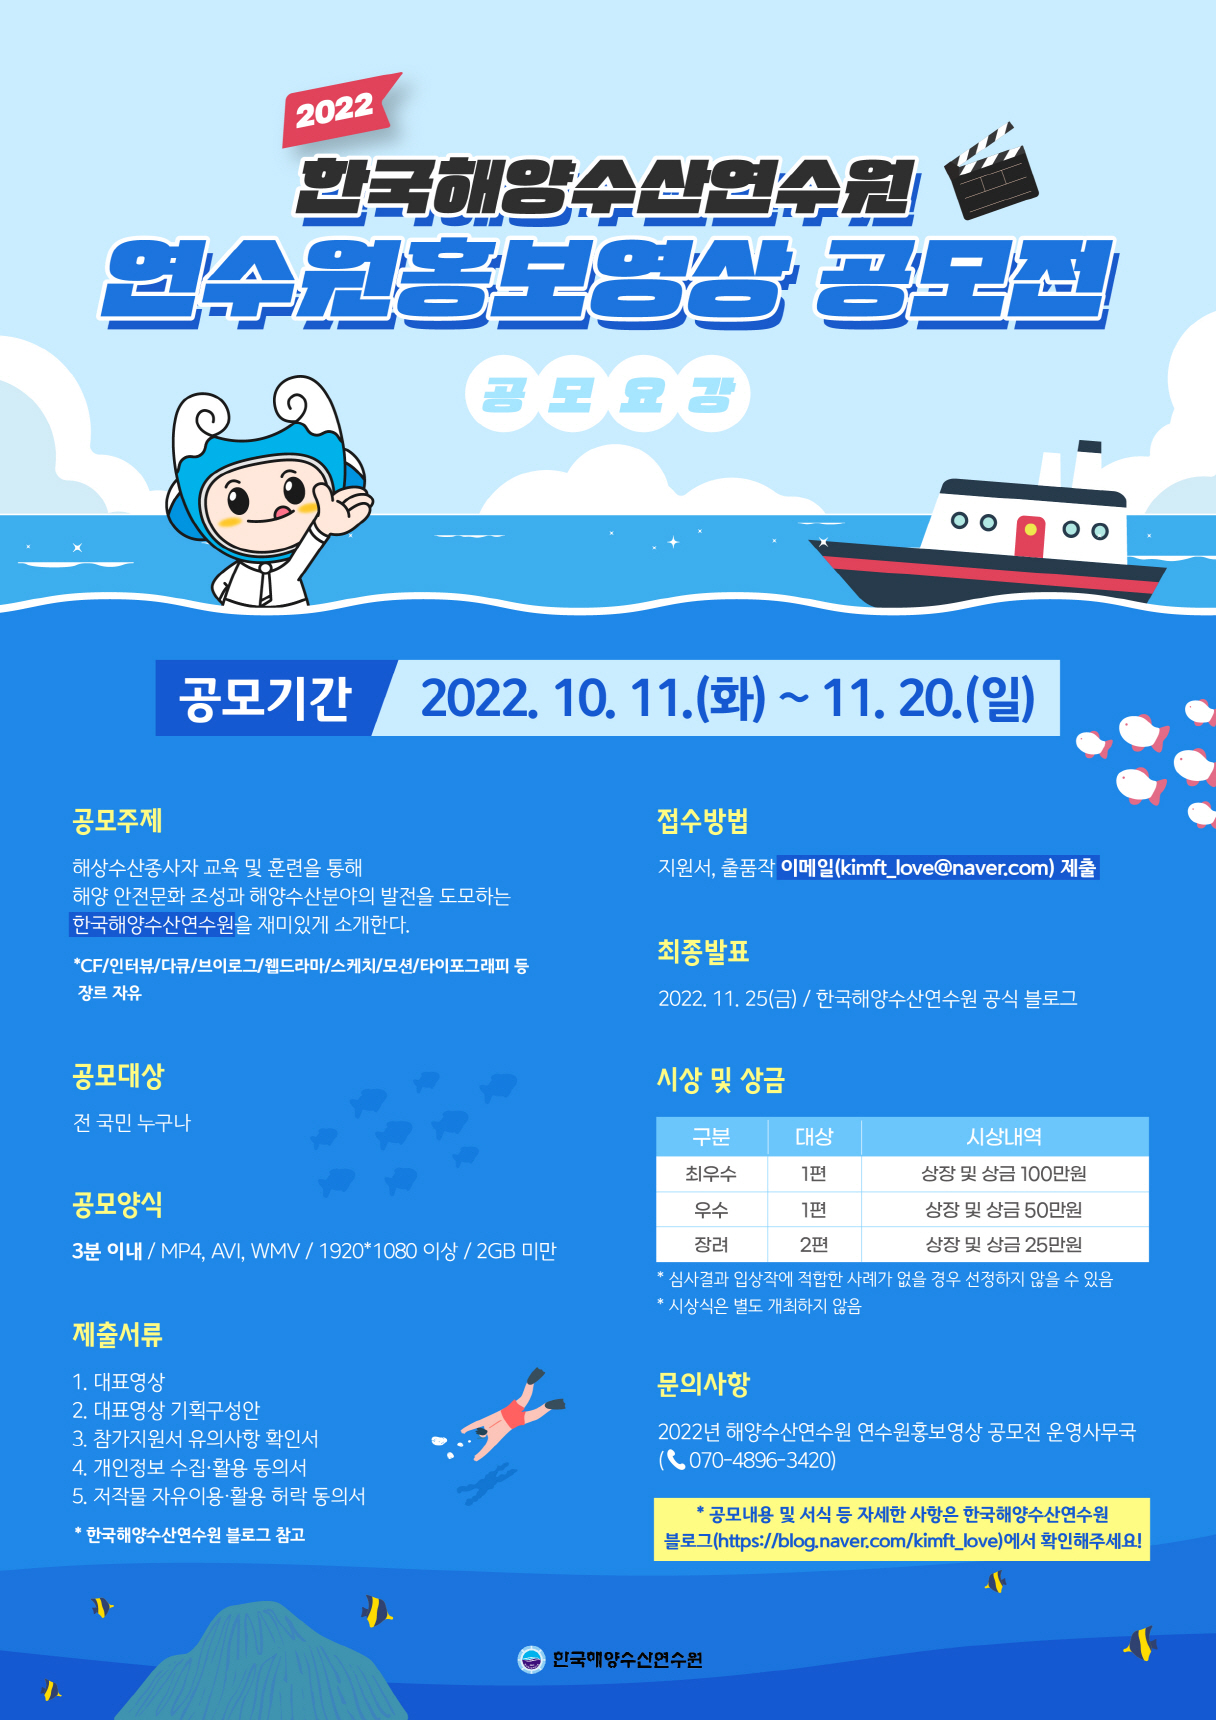 2022년도 한국해양수산연수원 연수원 홍보영상 공모전